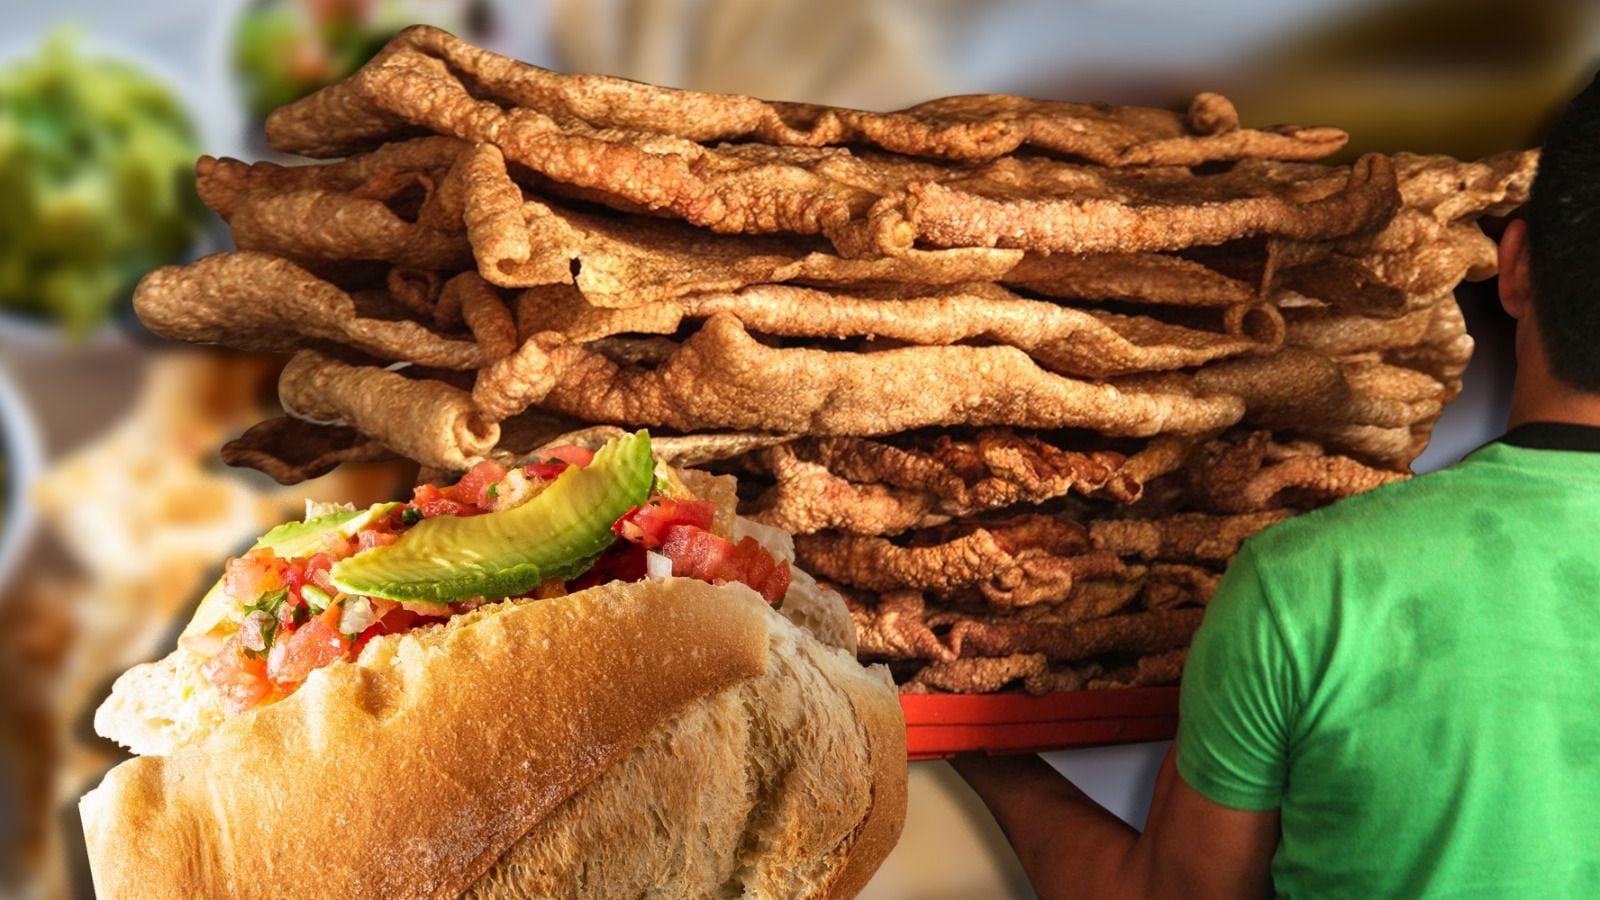 Las 'guacamayas' son tortas de chicharrón populares en Guanajuato. (Fotoarte: Andrea López Trejo | El Financiero).